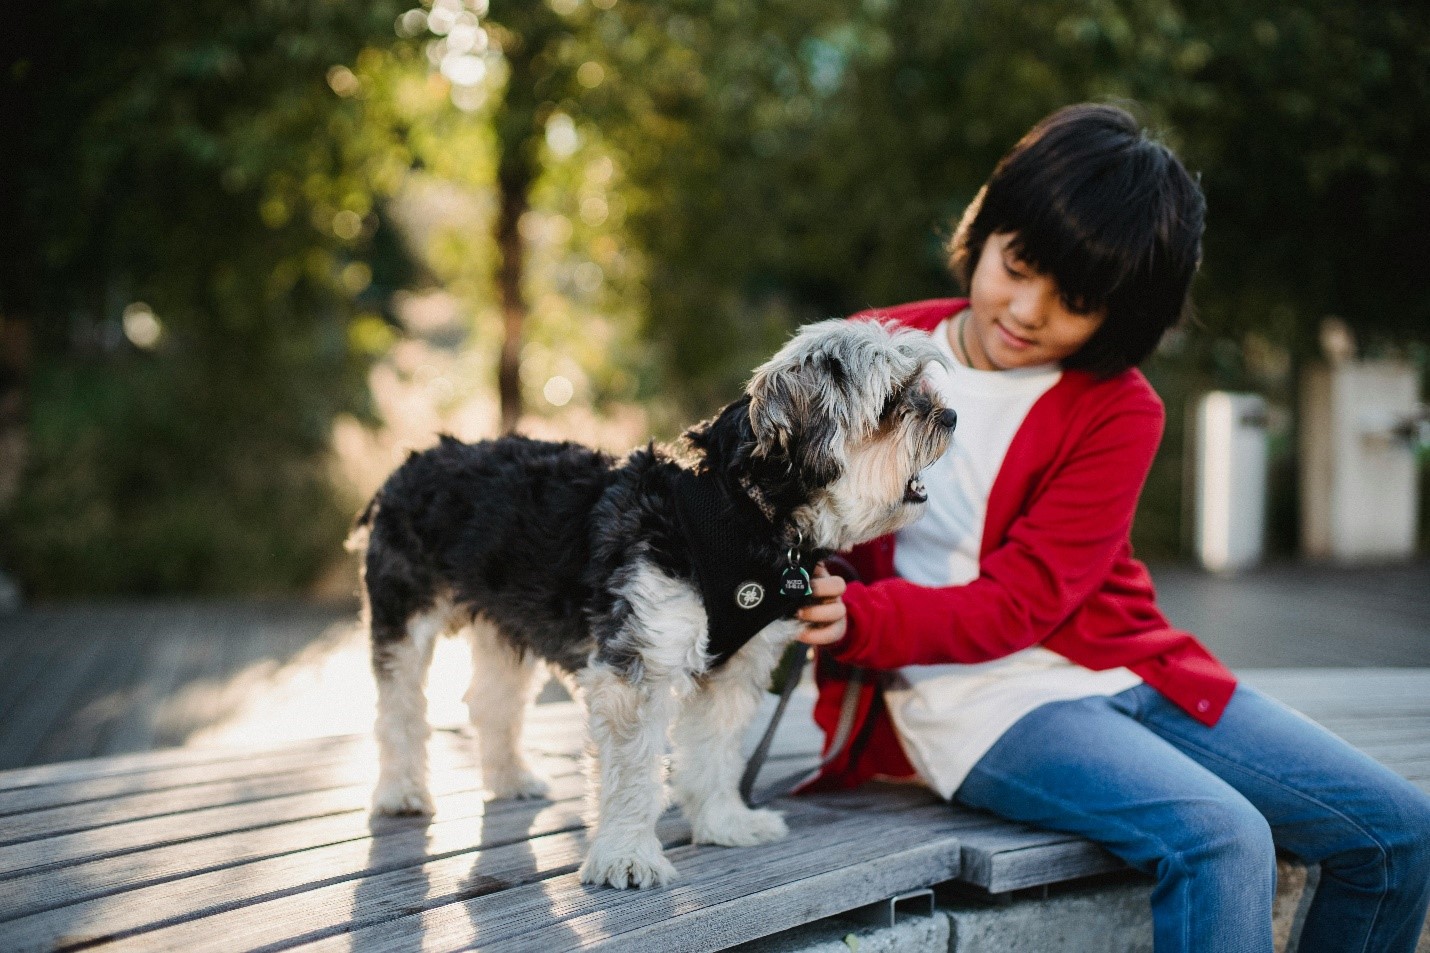 כלב לילדים: מה היתרונות של לגדול בבית עם בעל חיים?